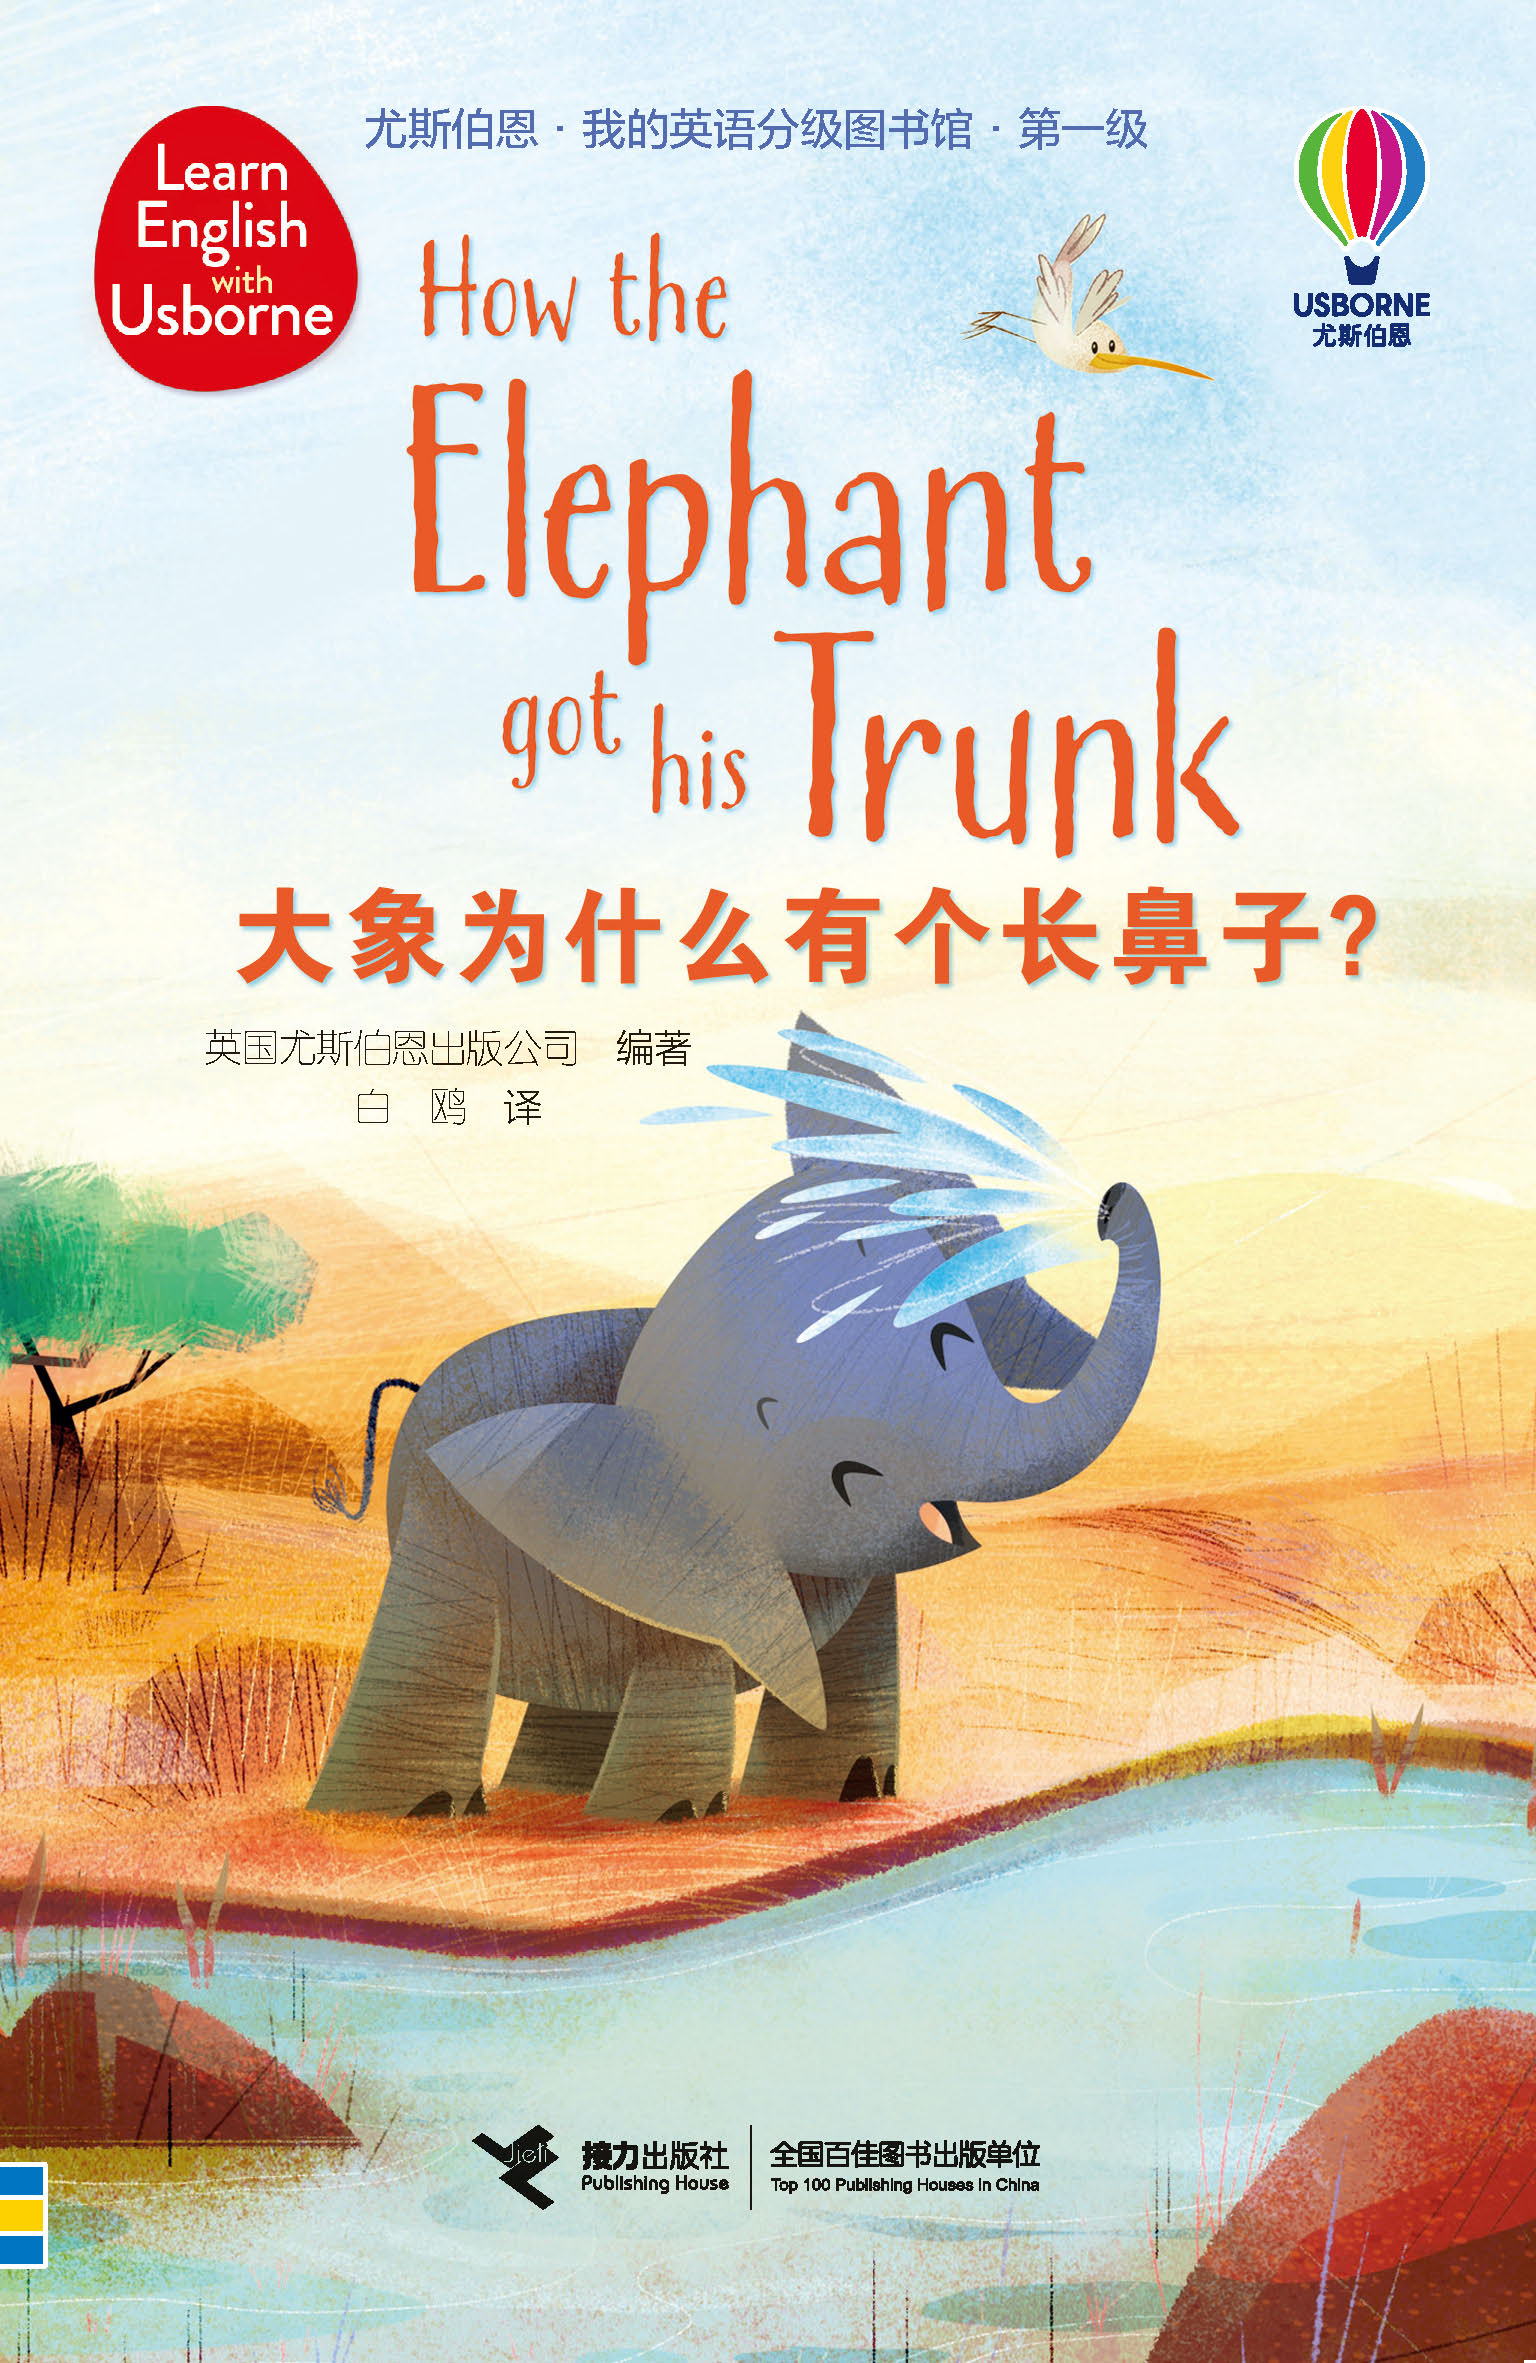 尤斯伯恩·我的英语分级图书馆·第一级·大象为什么有个长鼻子？